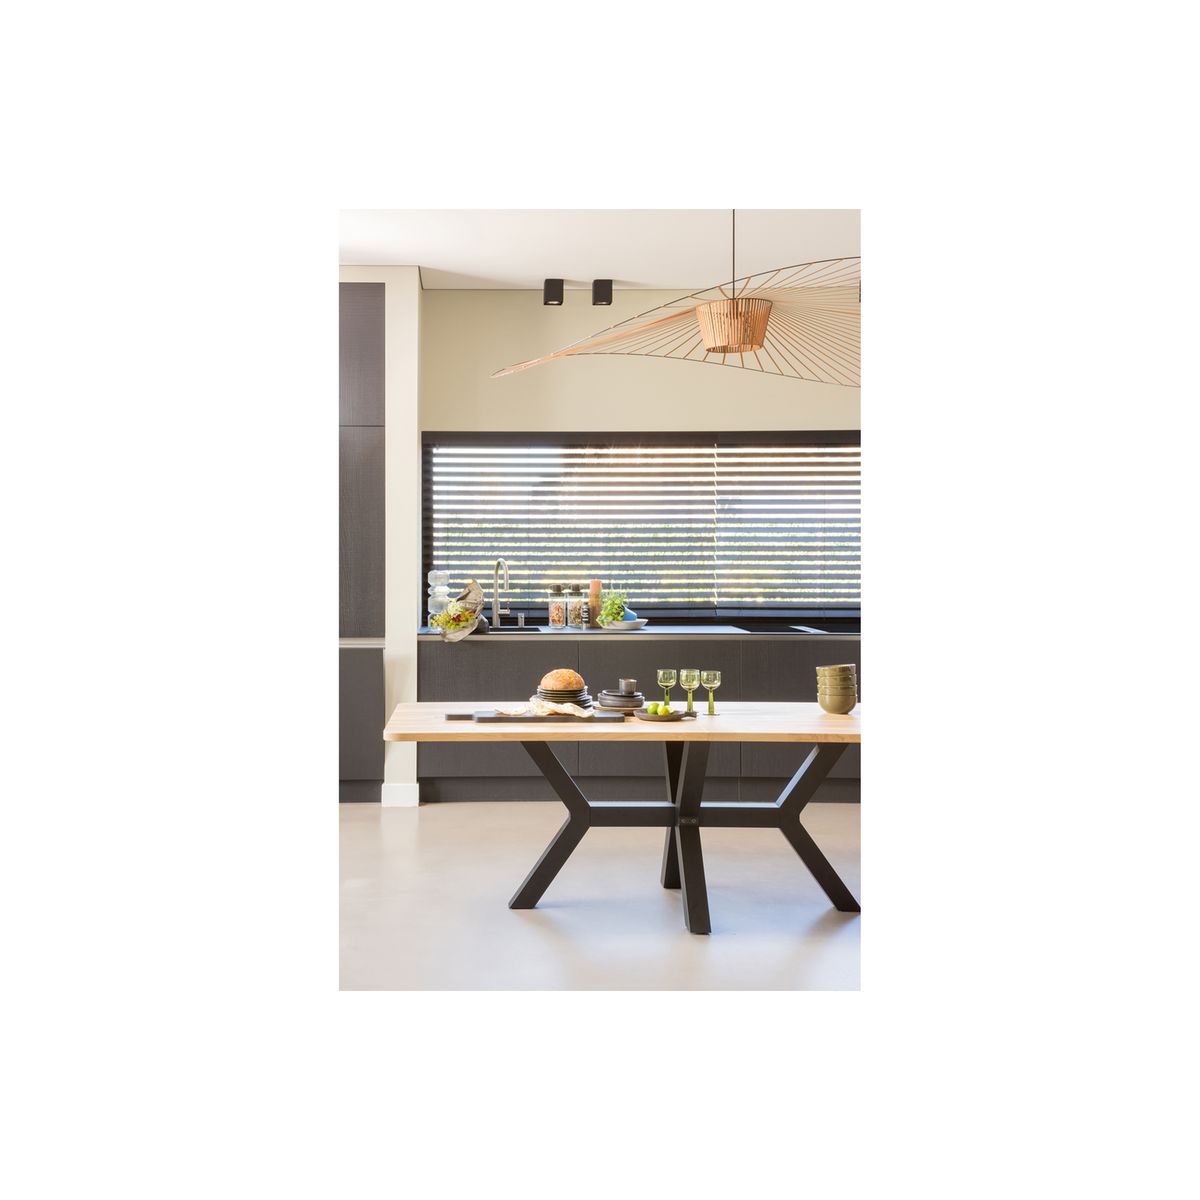 Table à manger extensible 140/180 cm effet chêne, piètement noir - Santa -  Homifab